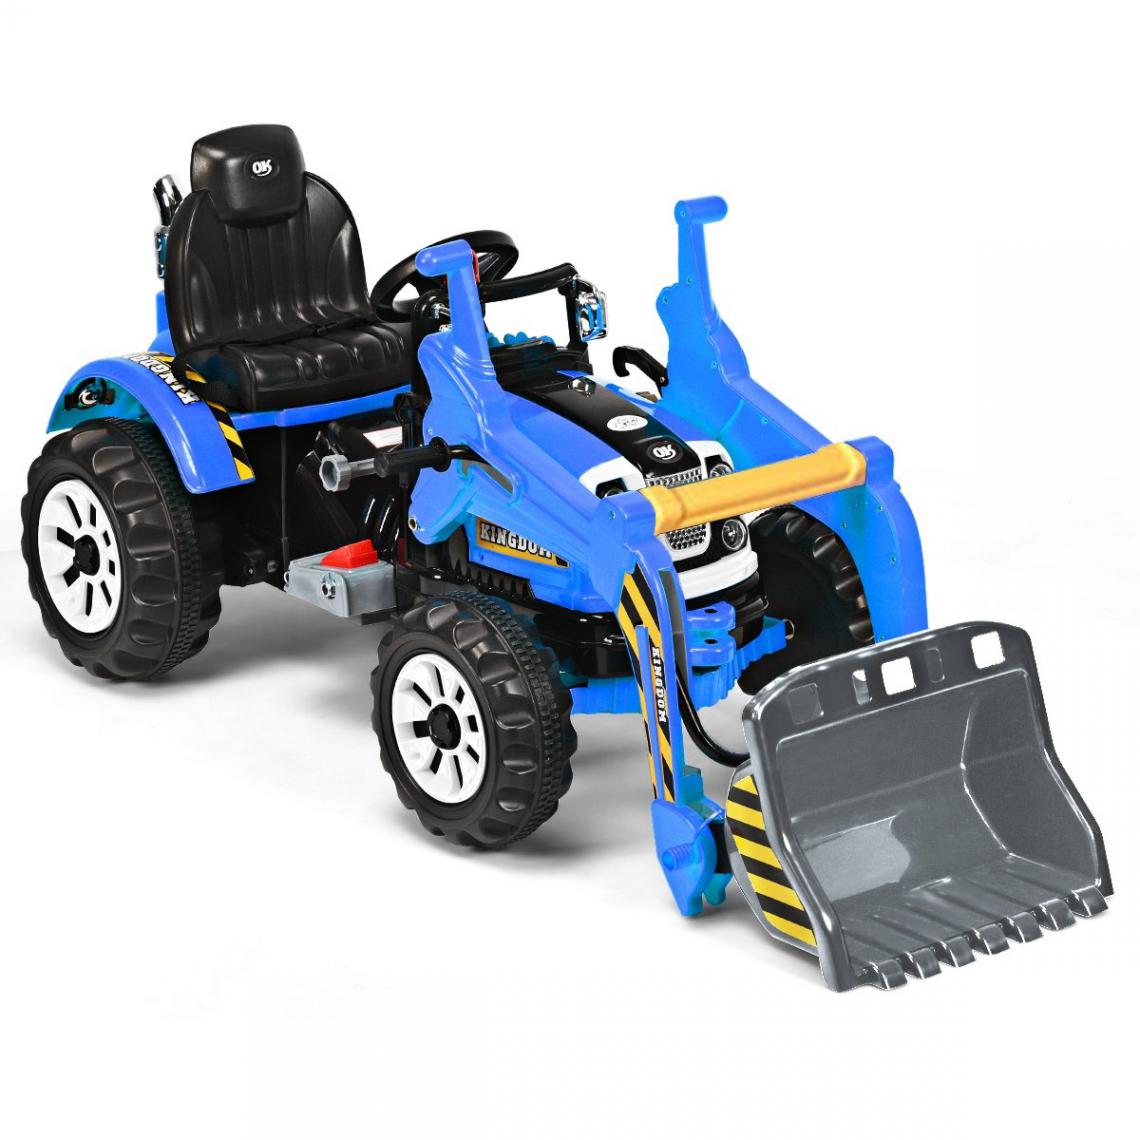 Decoshop26 - Tracteur pour enfants 3-8 ans tracteur electrique avec 2 choix de vitesse et chargeuse marche avant et arrière bleu 20_0001329 - Tricycle